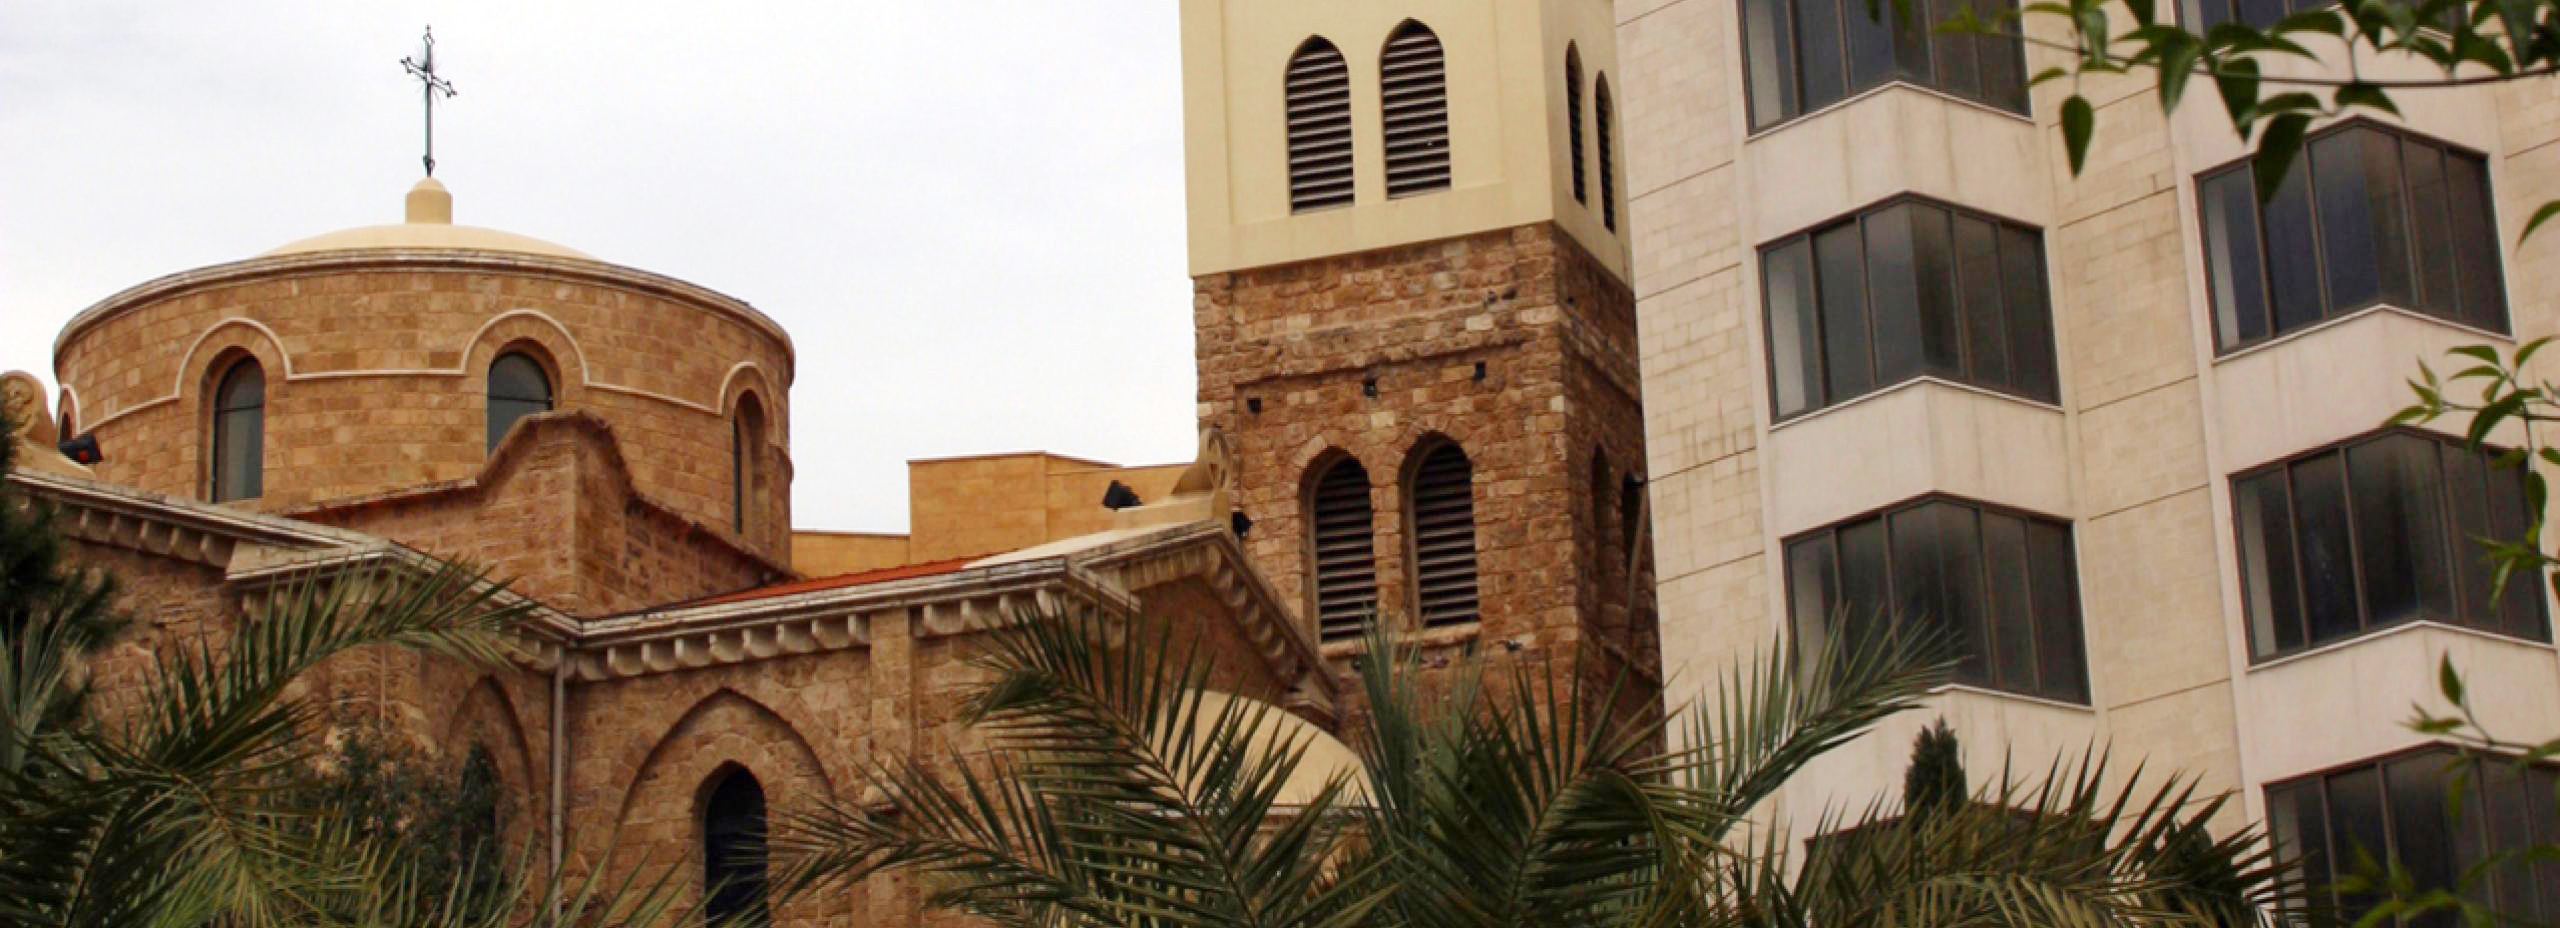 كاتدرائية القديس جاورجيوس للروم الأرثوذكس - بيروت (2)